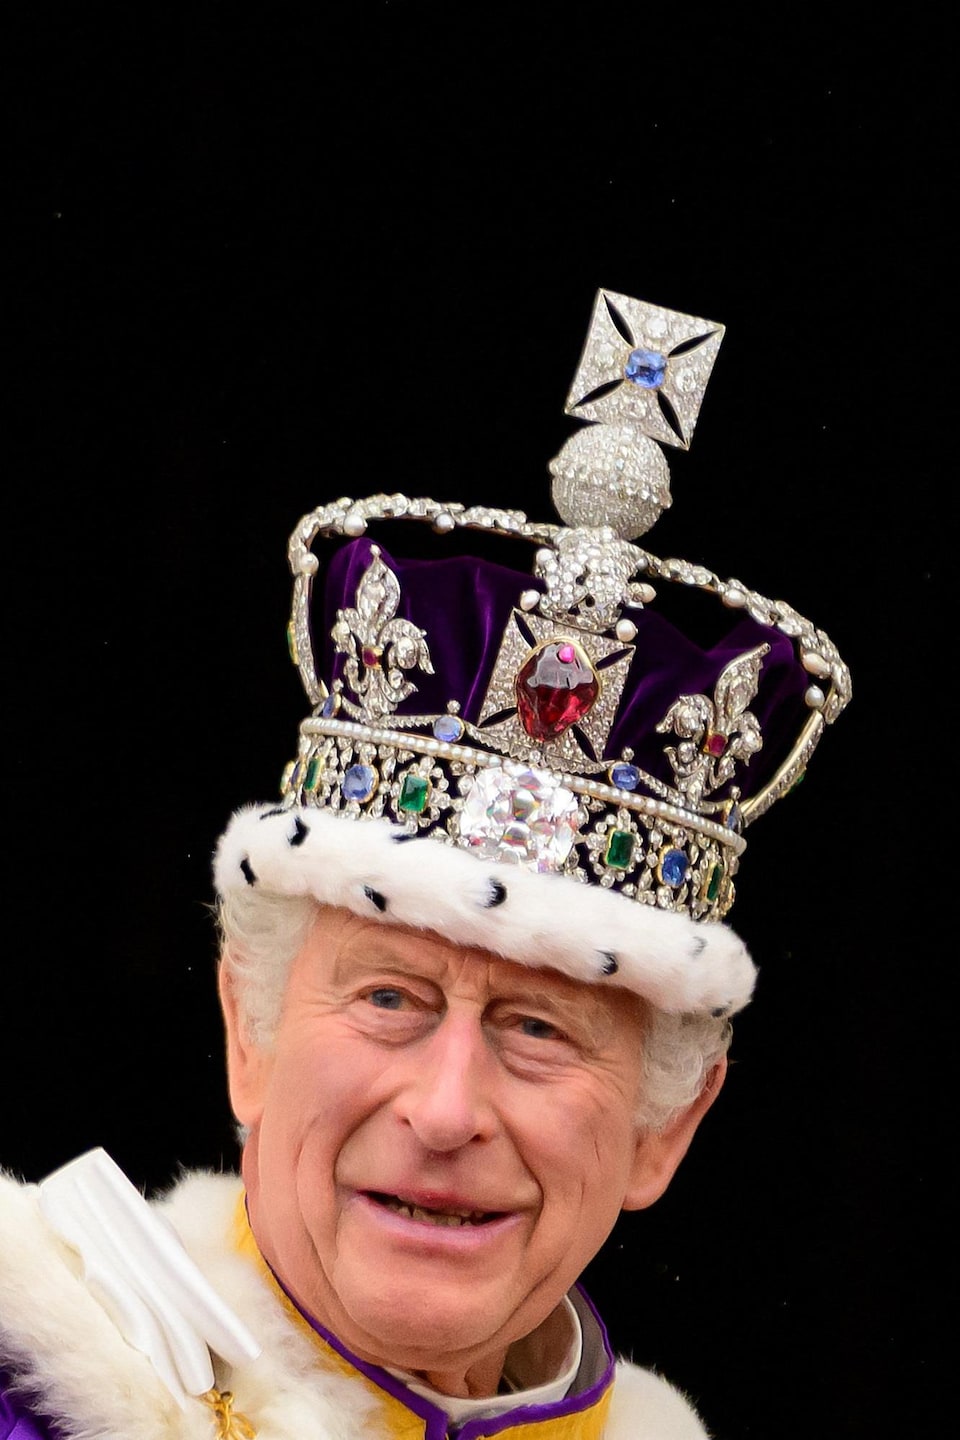 [Jeu] Suite d'images !  - Page 29 Royaume-uni-couronnement-charles-roi-royaute-monarchie-britannique-66707